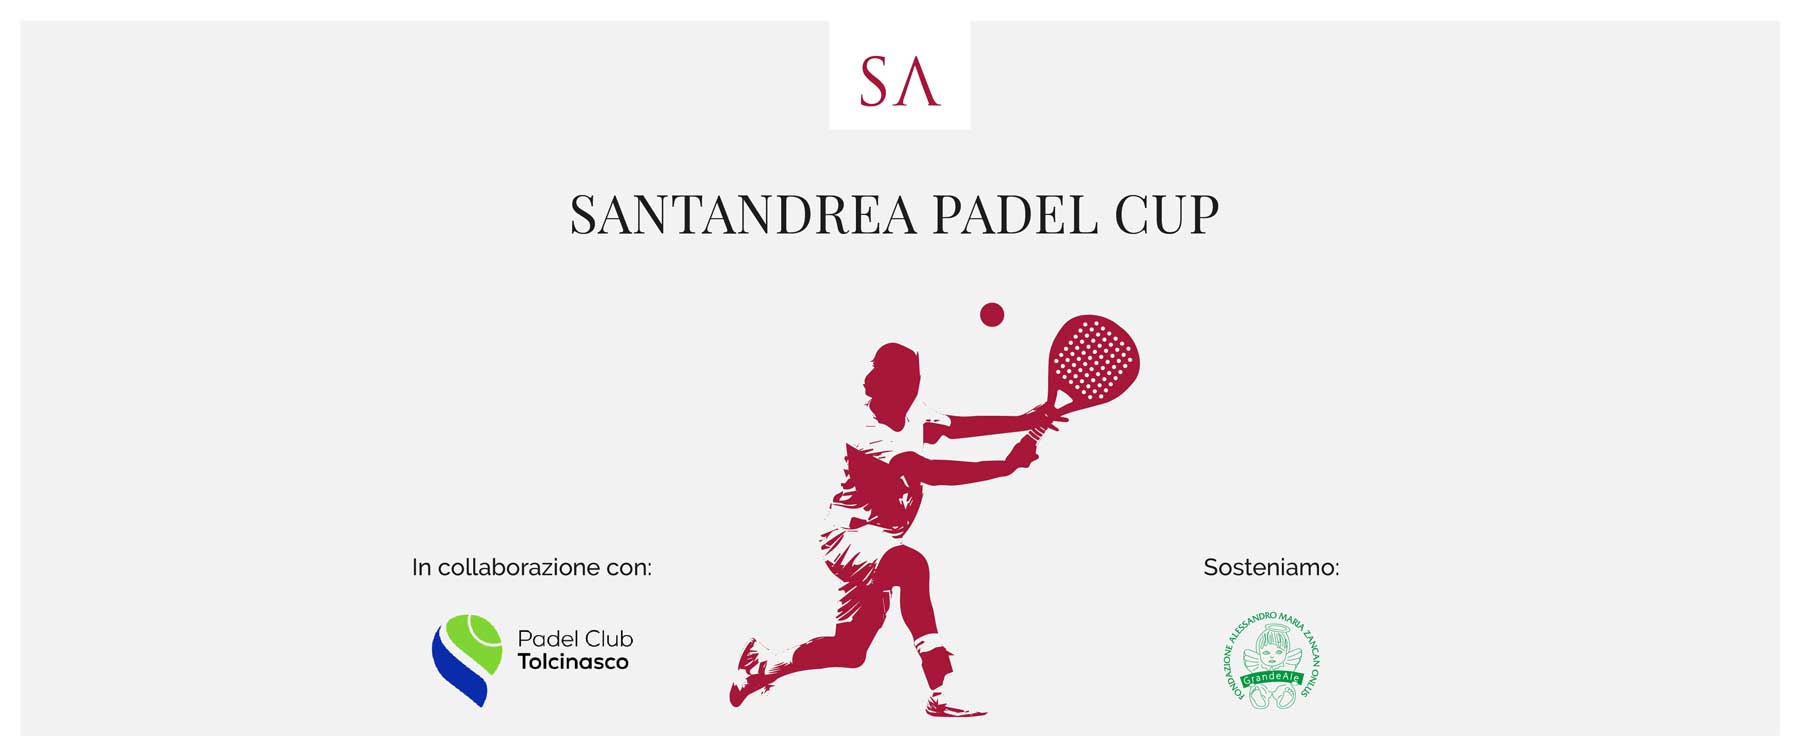 Santandrea Padel Cup: il torneo di beneficienza che ha unito sport e sociale